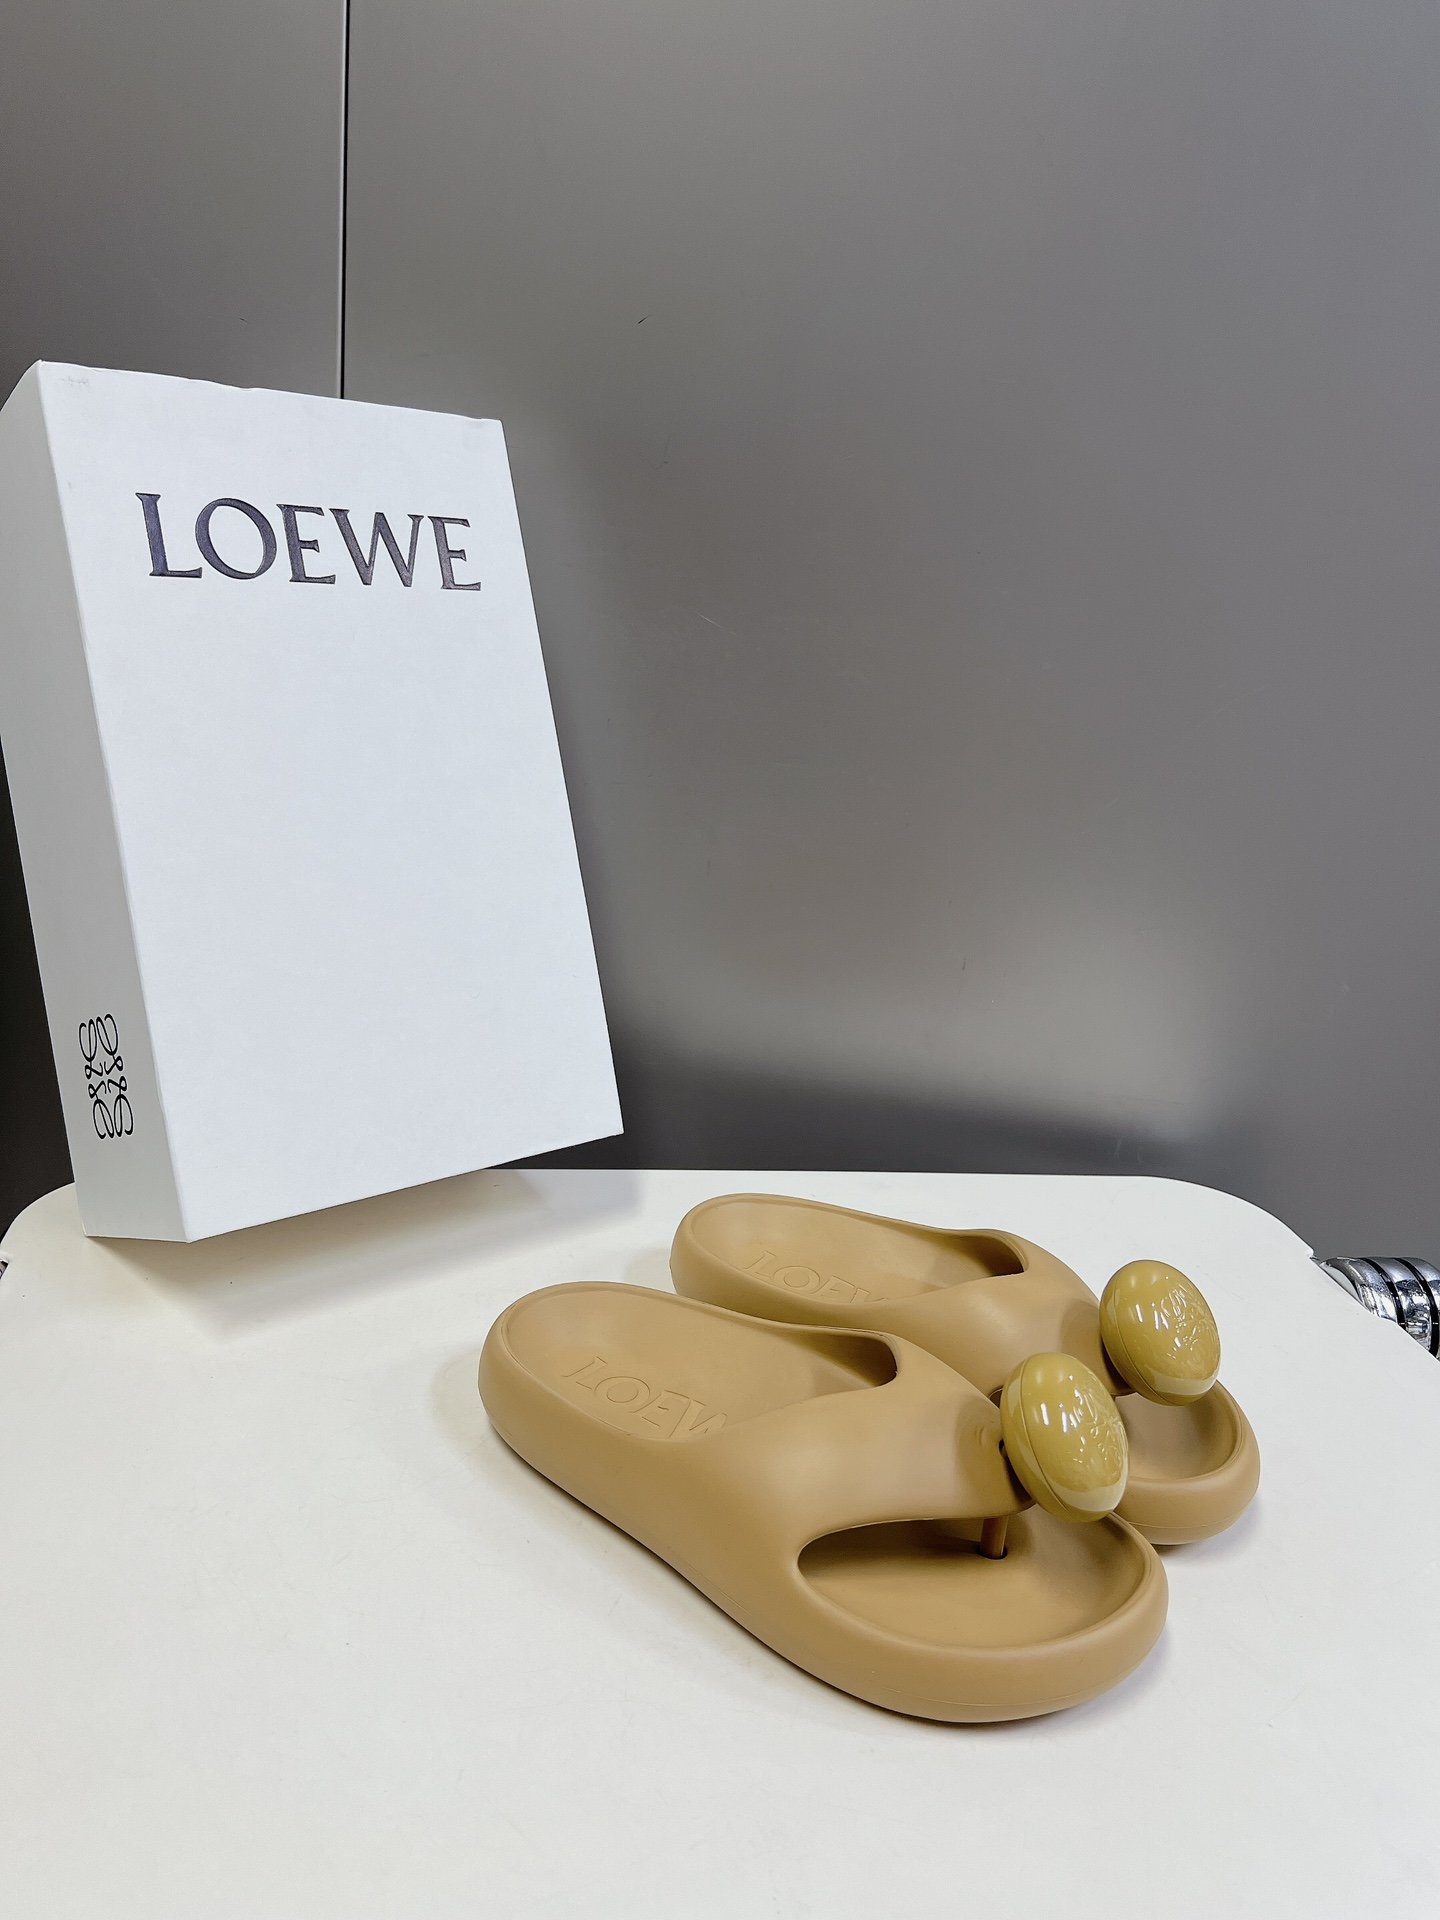 罗意威LOEWE24s春夏新款Ease泡泡夹脚沙滩鞋凉拖鞋原版购入开发做货羊皮材质舒适度极高非常具有辨识